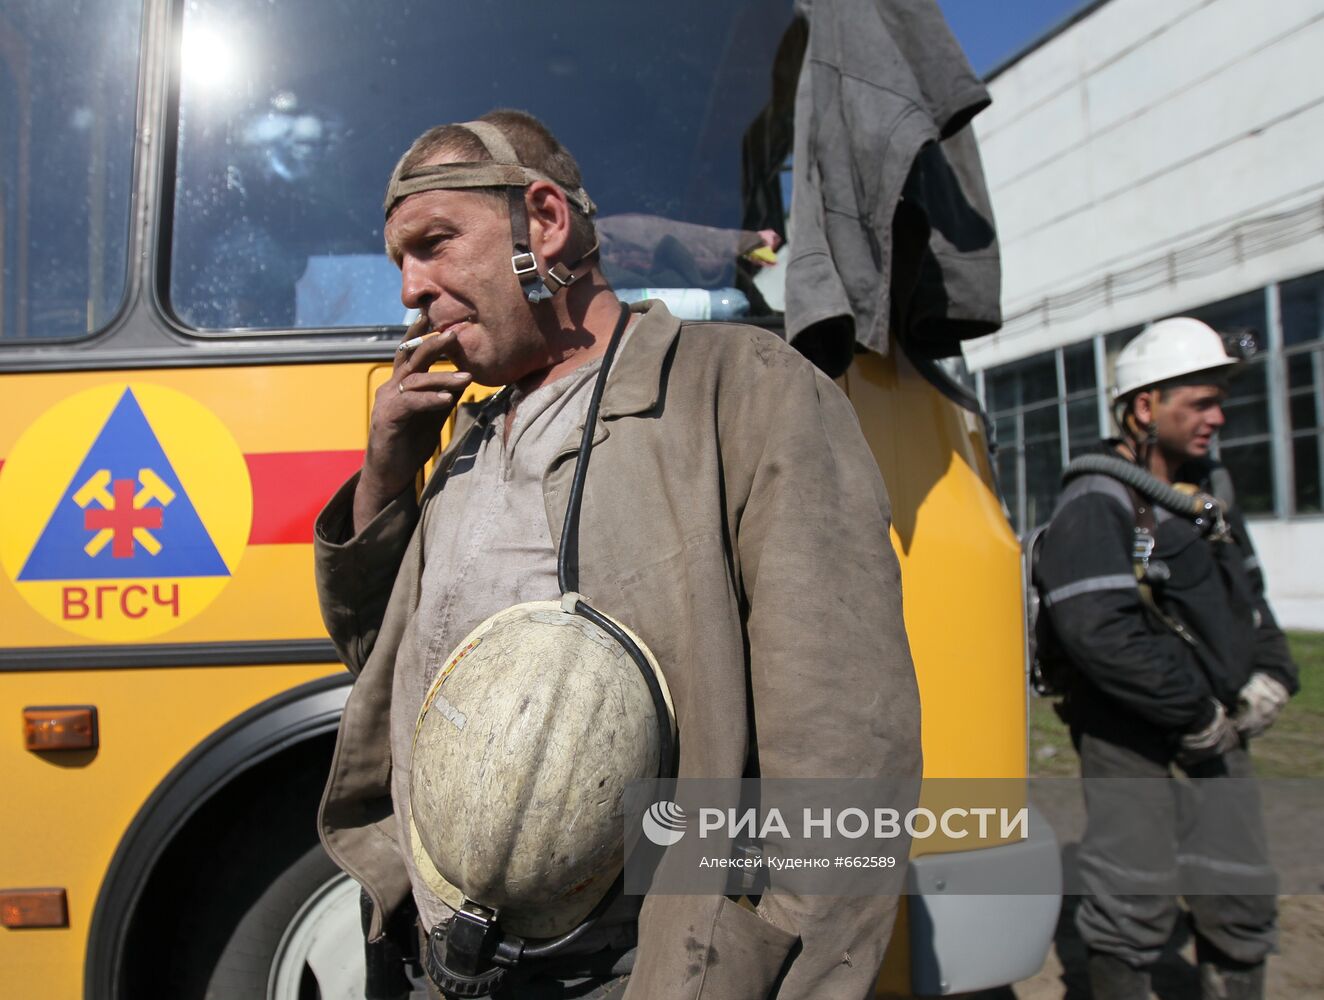 Спасатели отряда ВГСЧ на шахте "Распадская"